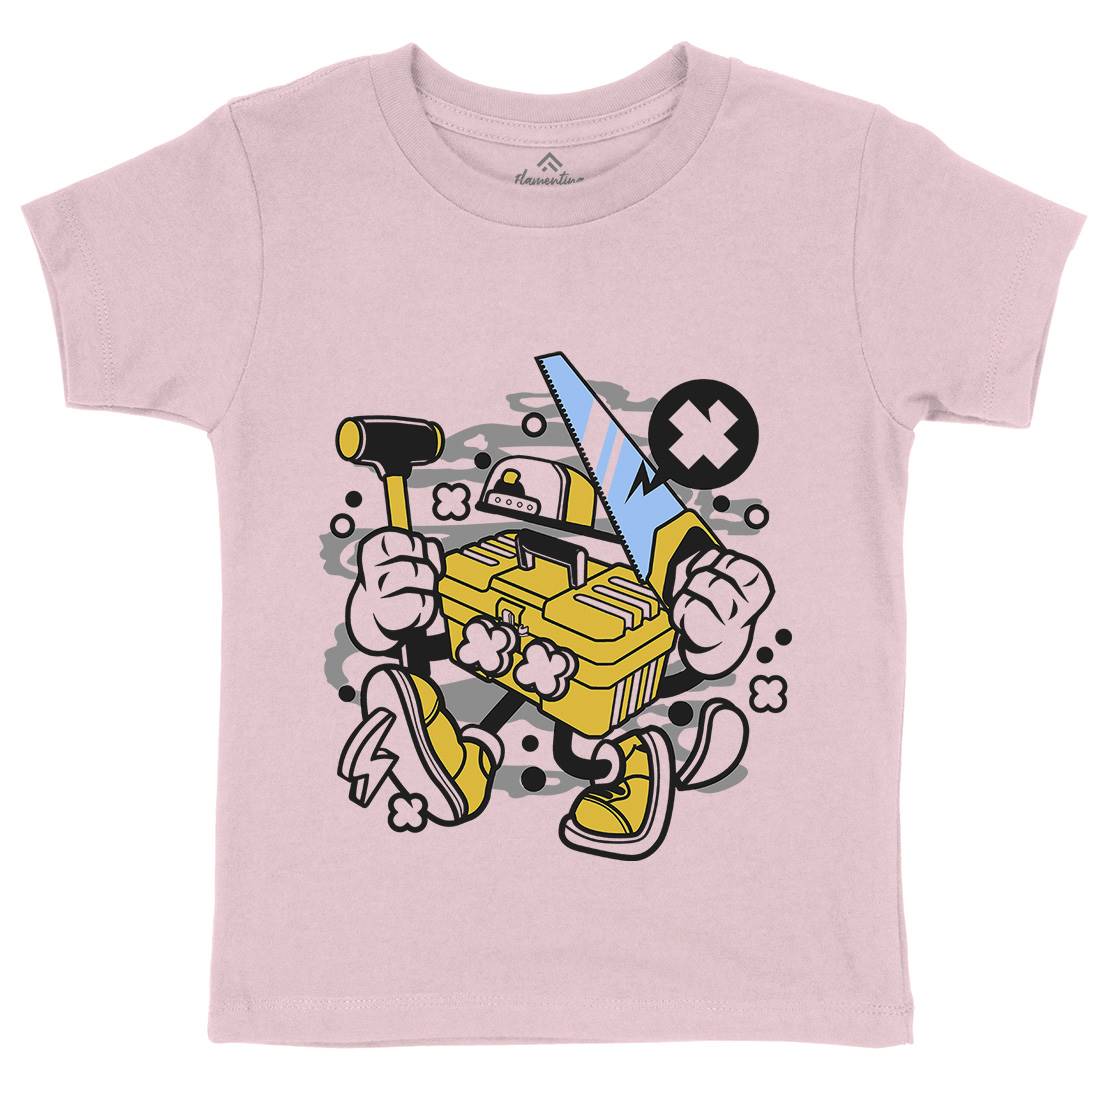 Tool Box Kids Crew Neck T-Shirt Work C282